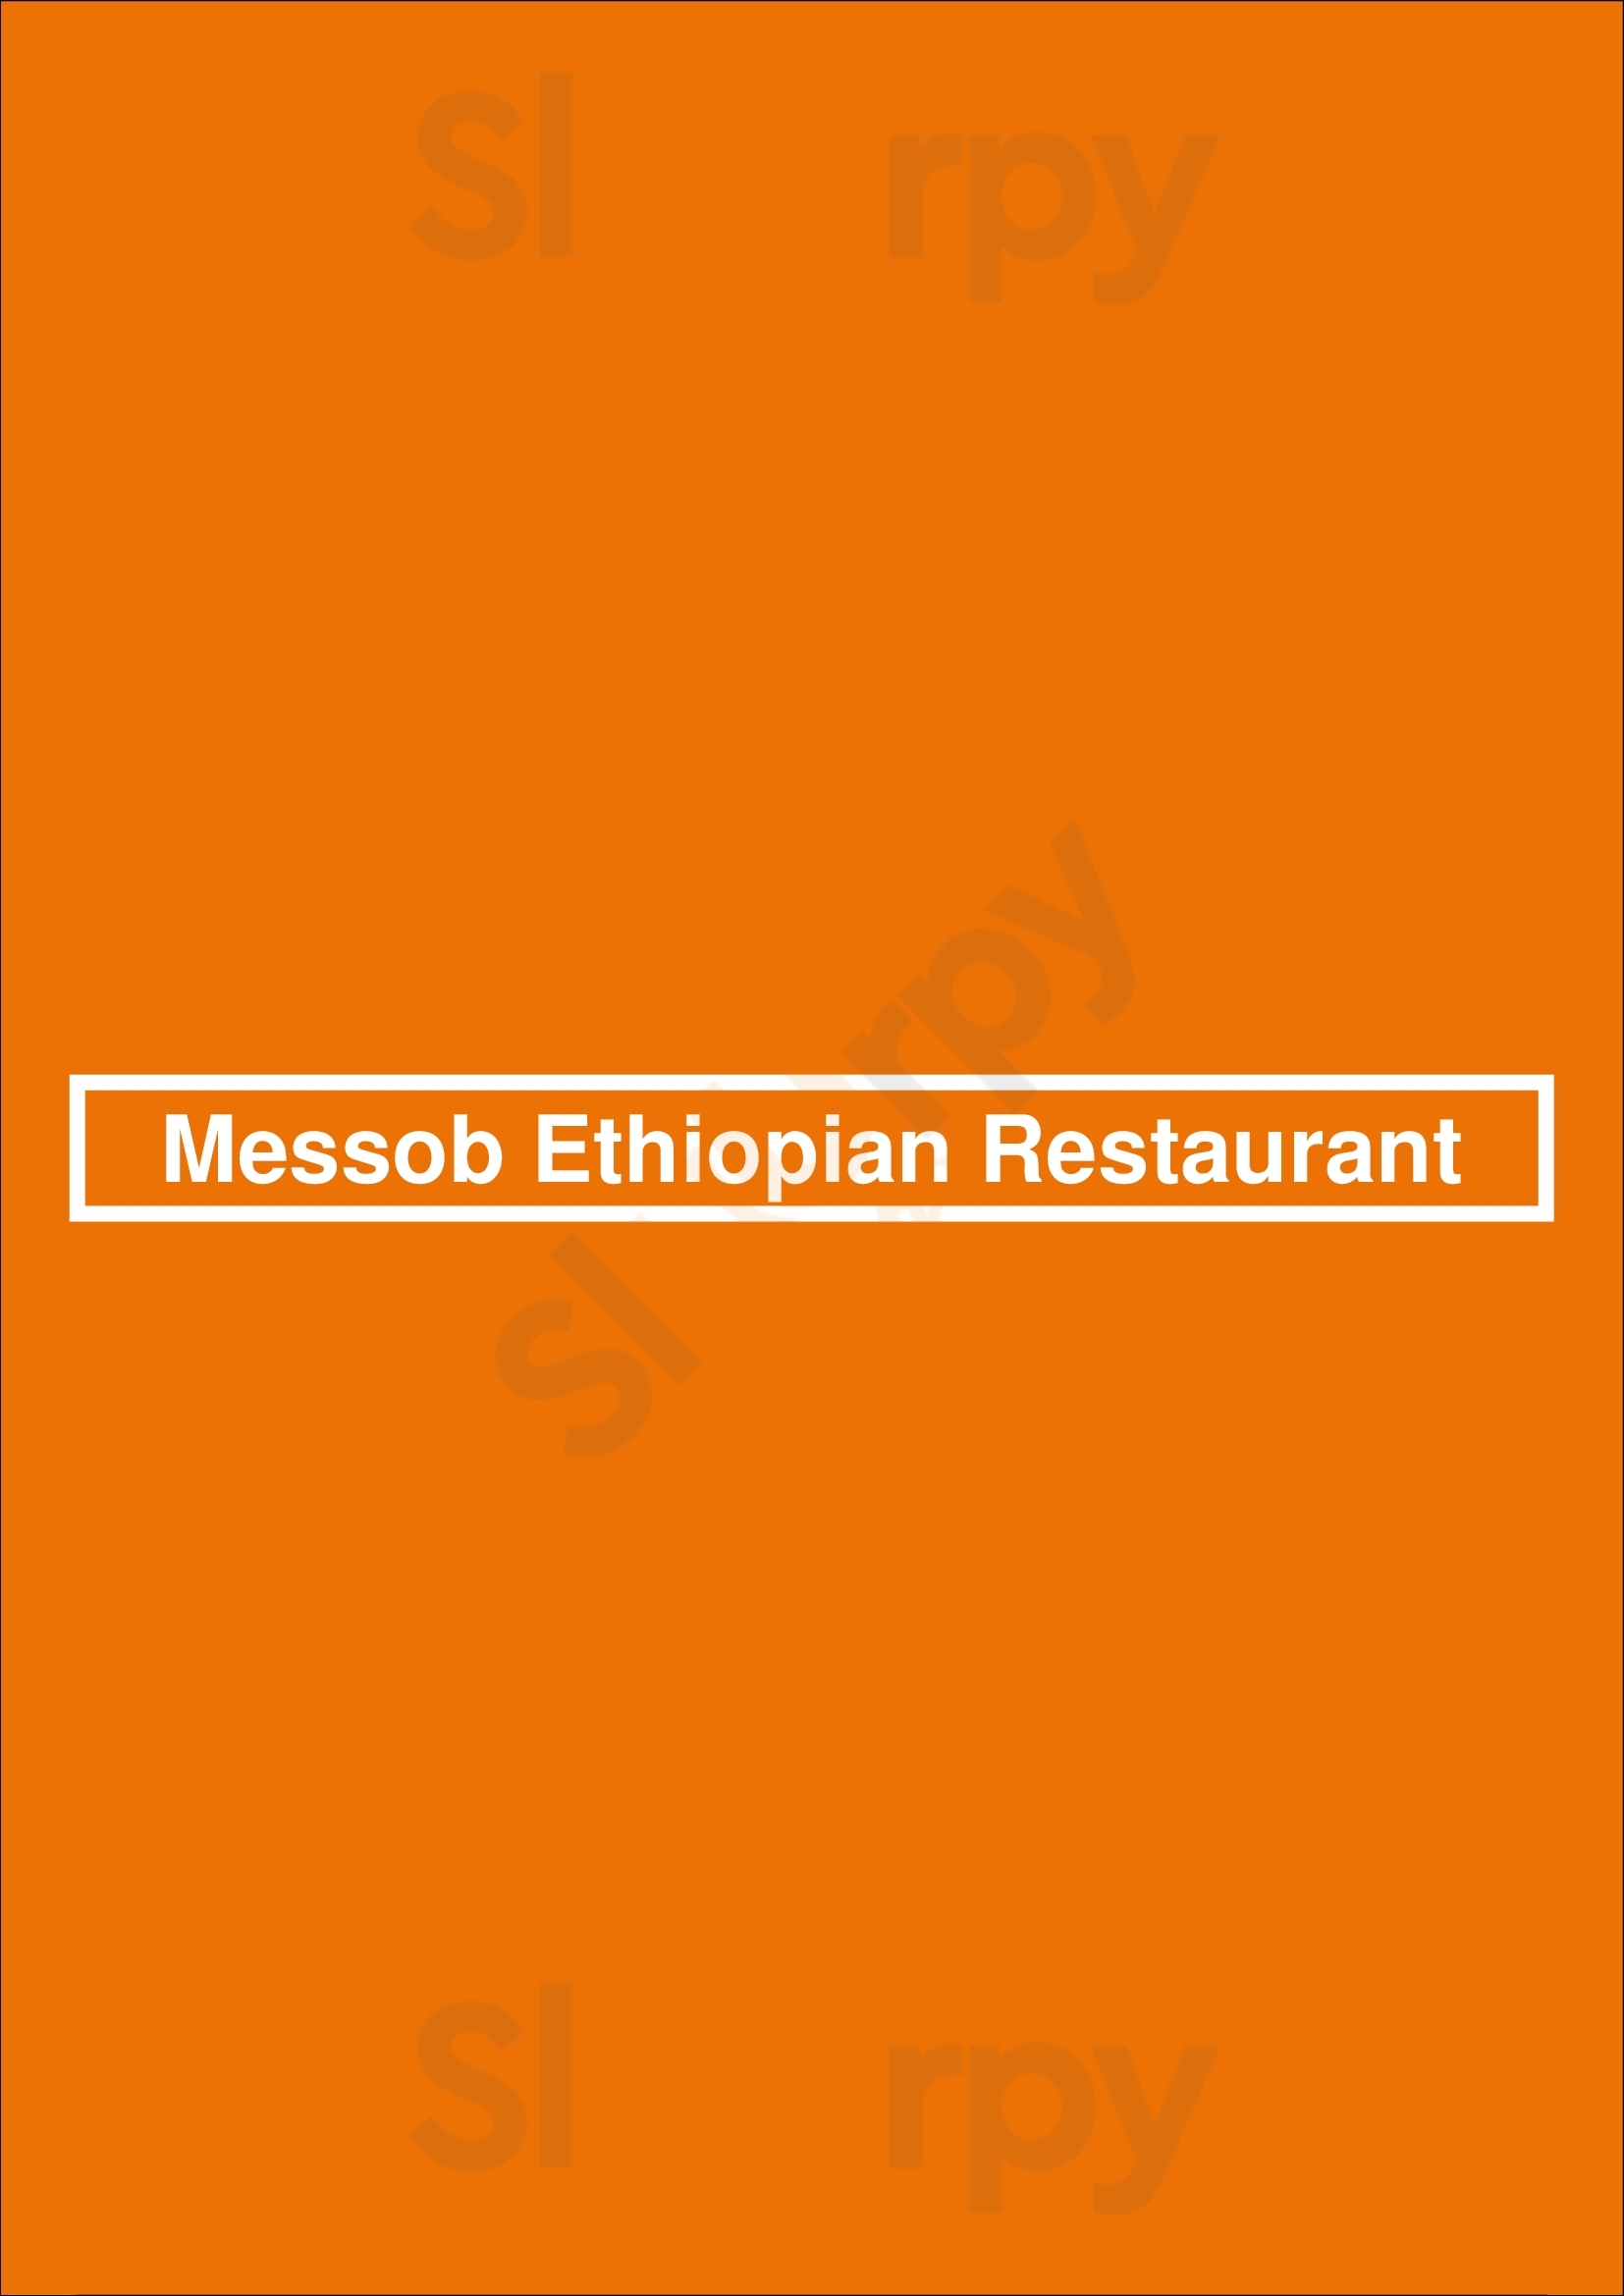 Messob Ethiopian Restaurant Oakland Menu - 1